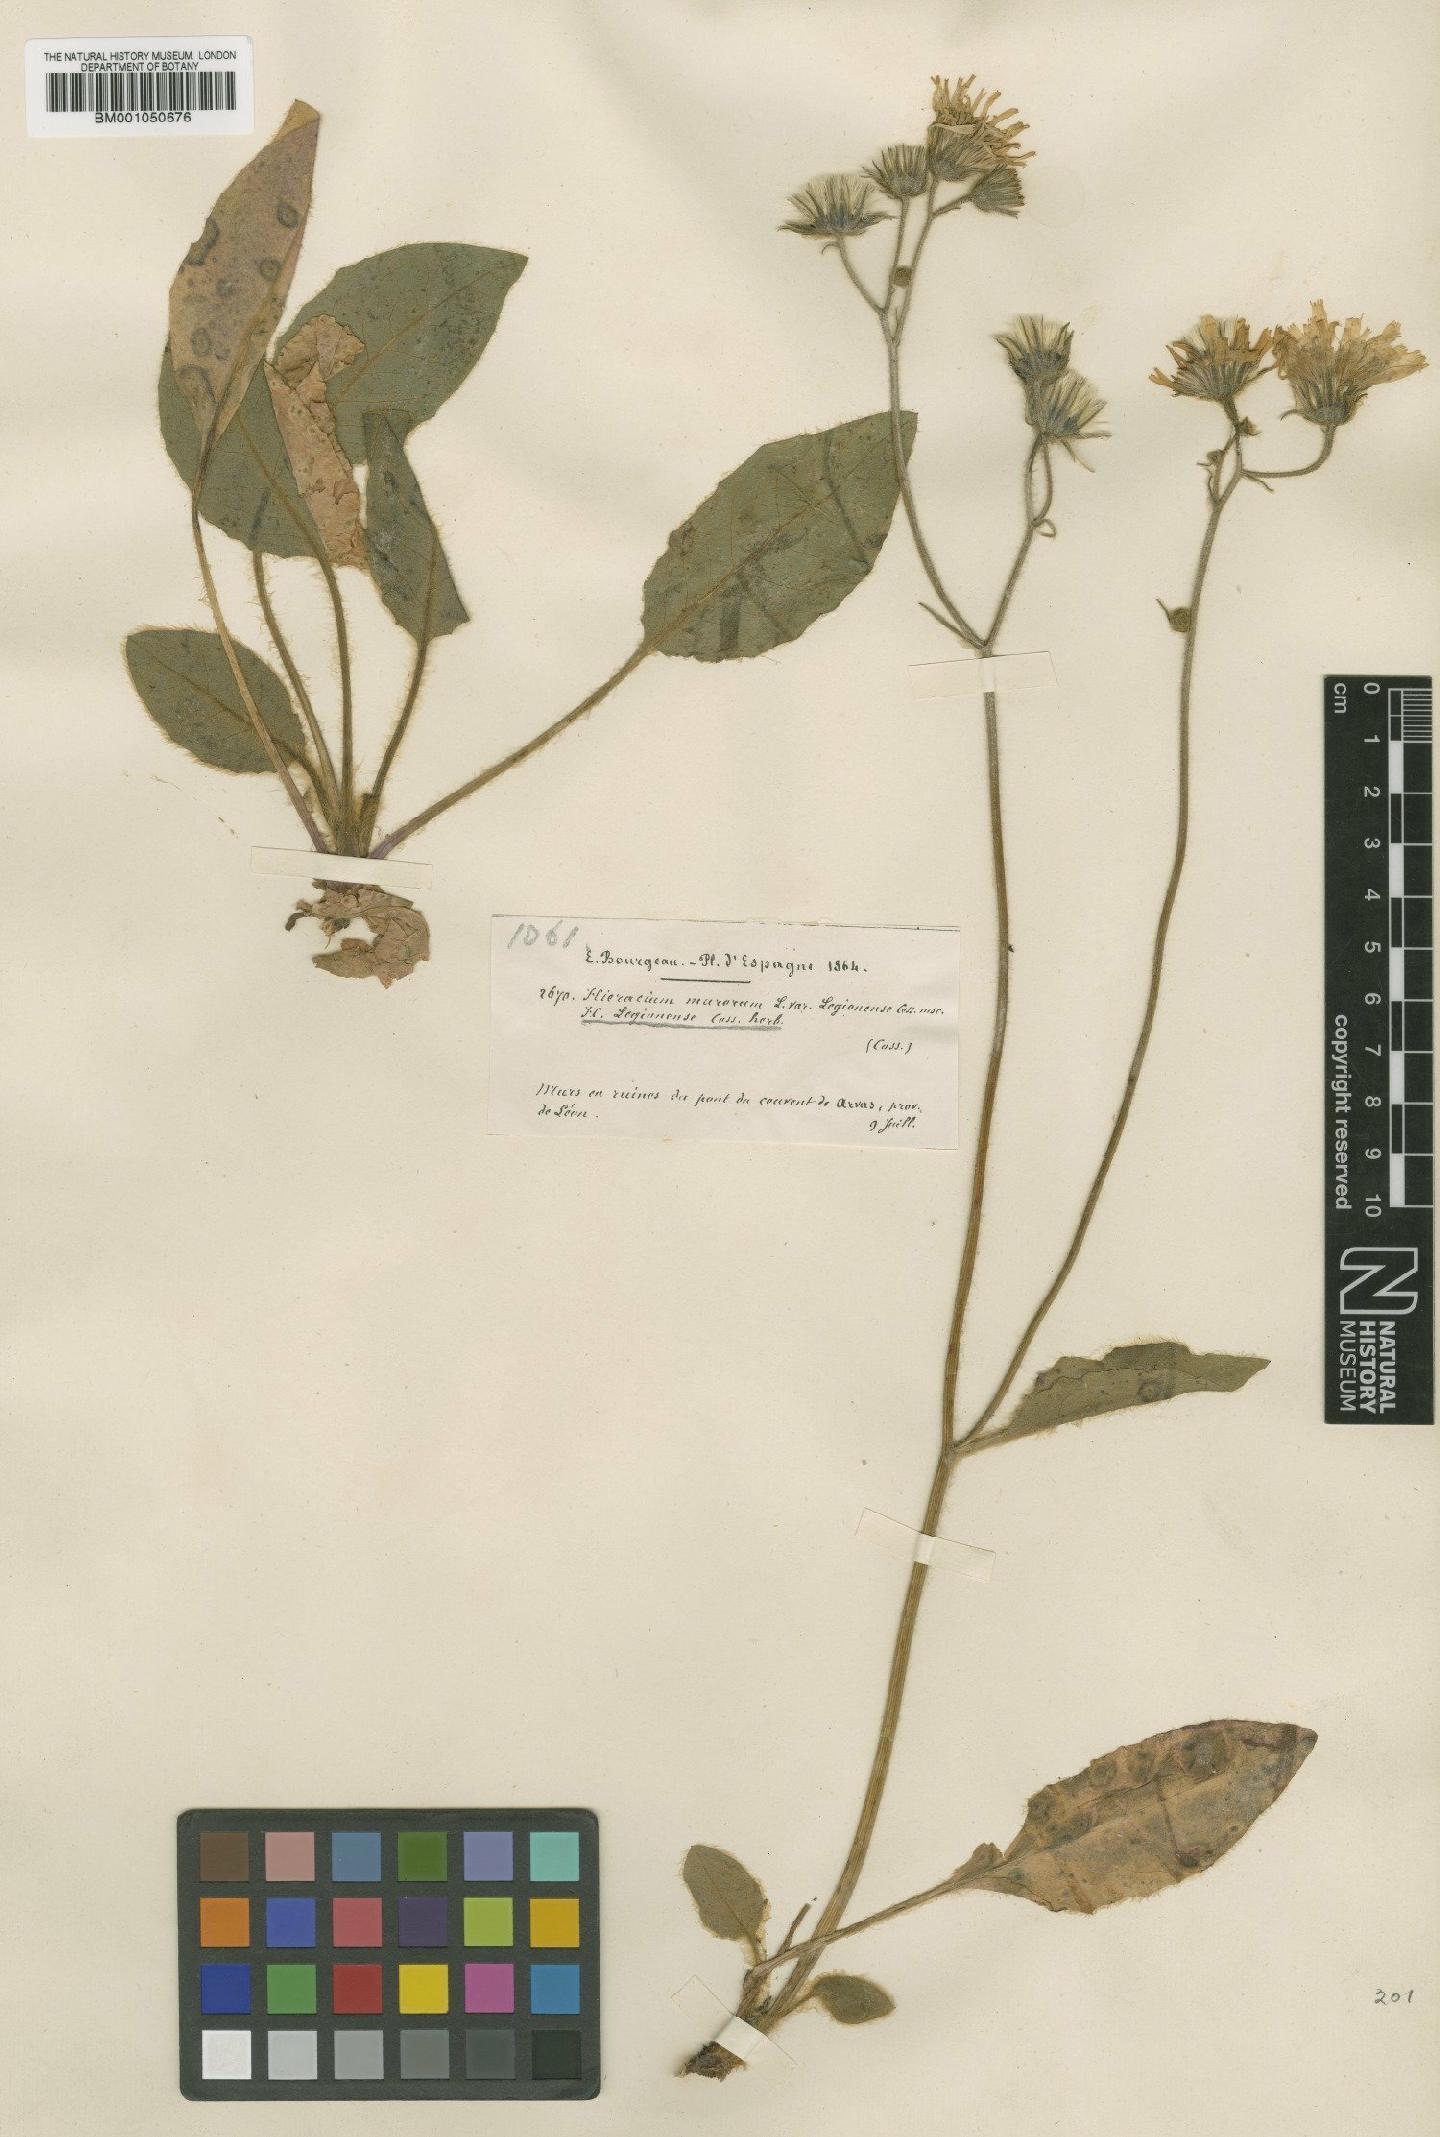 To NHMUK collection (Hieracium bicolor subsp. legionense (Willk.) Zahn; TYPE; NHMUK:ecatalogue:2398042)